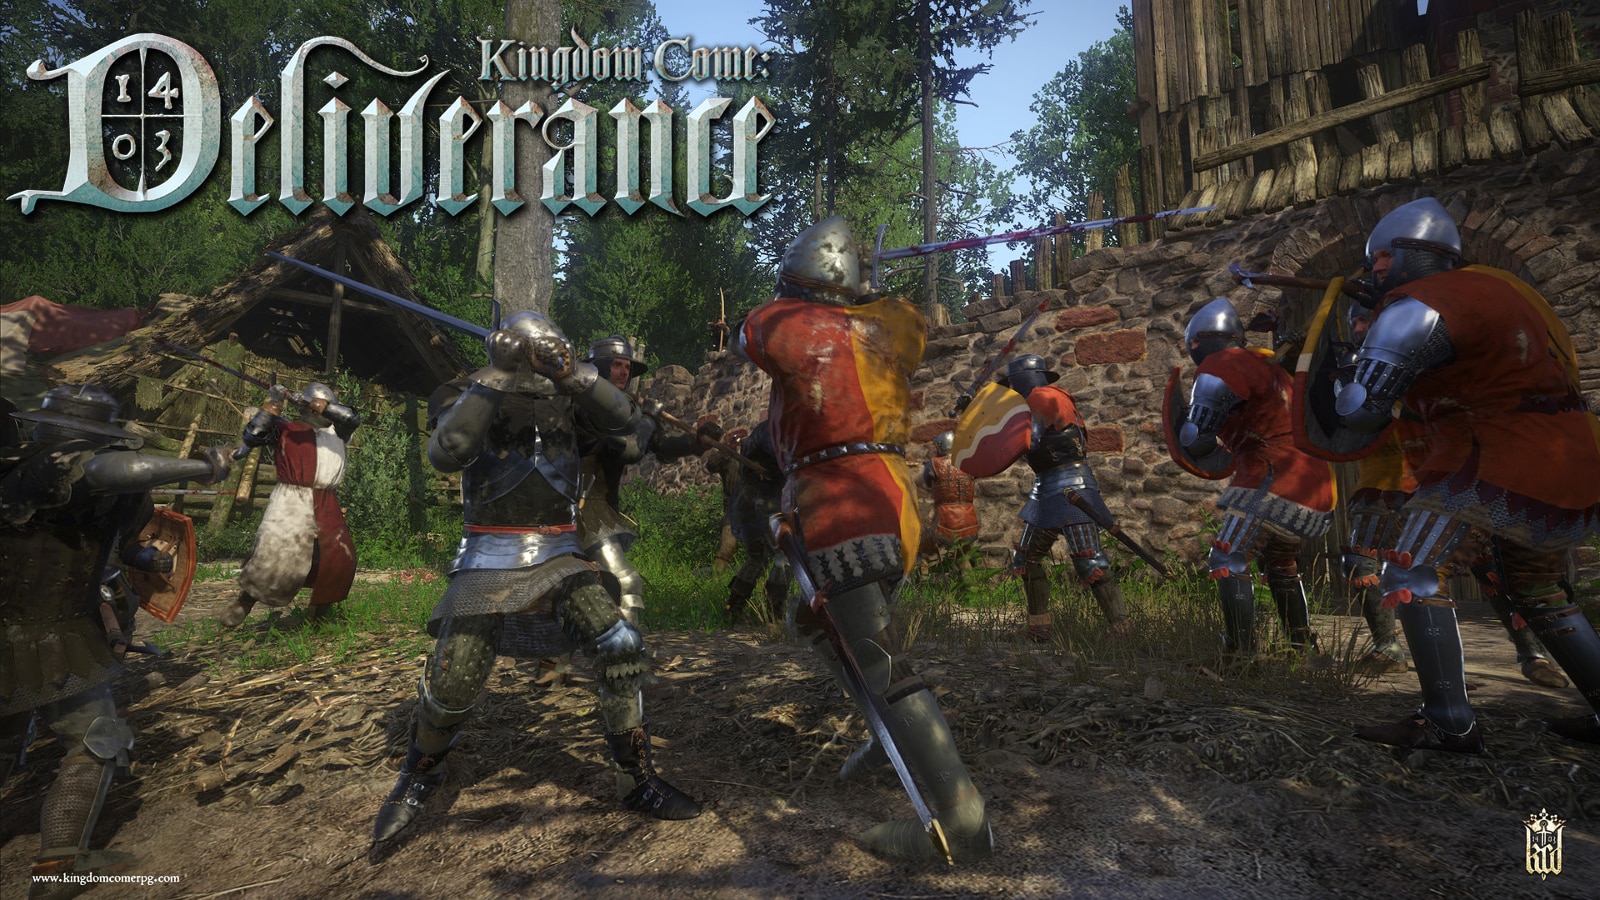 Een beeld van Kingdom Come Deliverance -gameplay, die lijkt op Skyrim